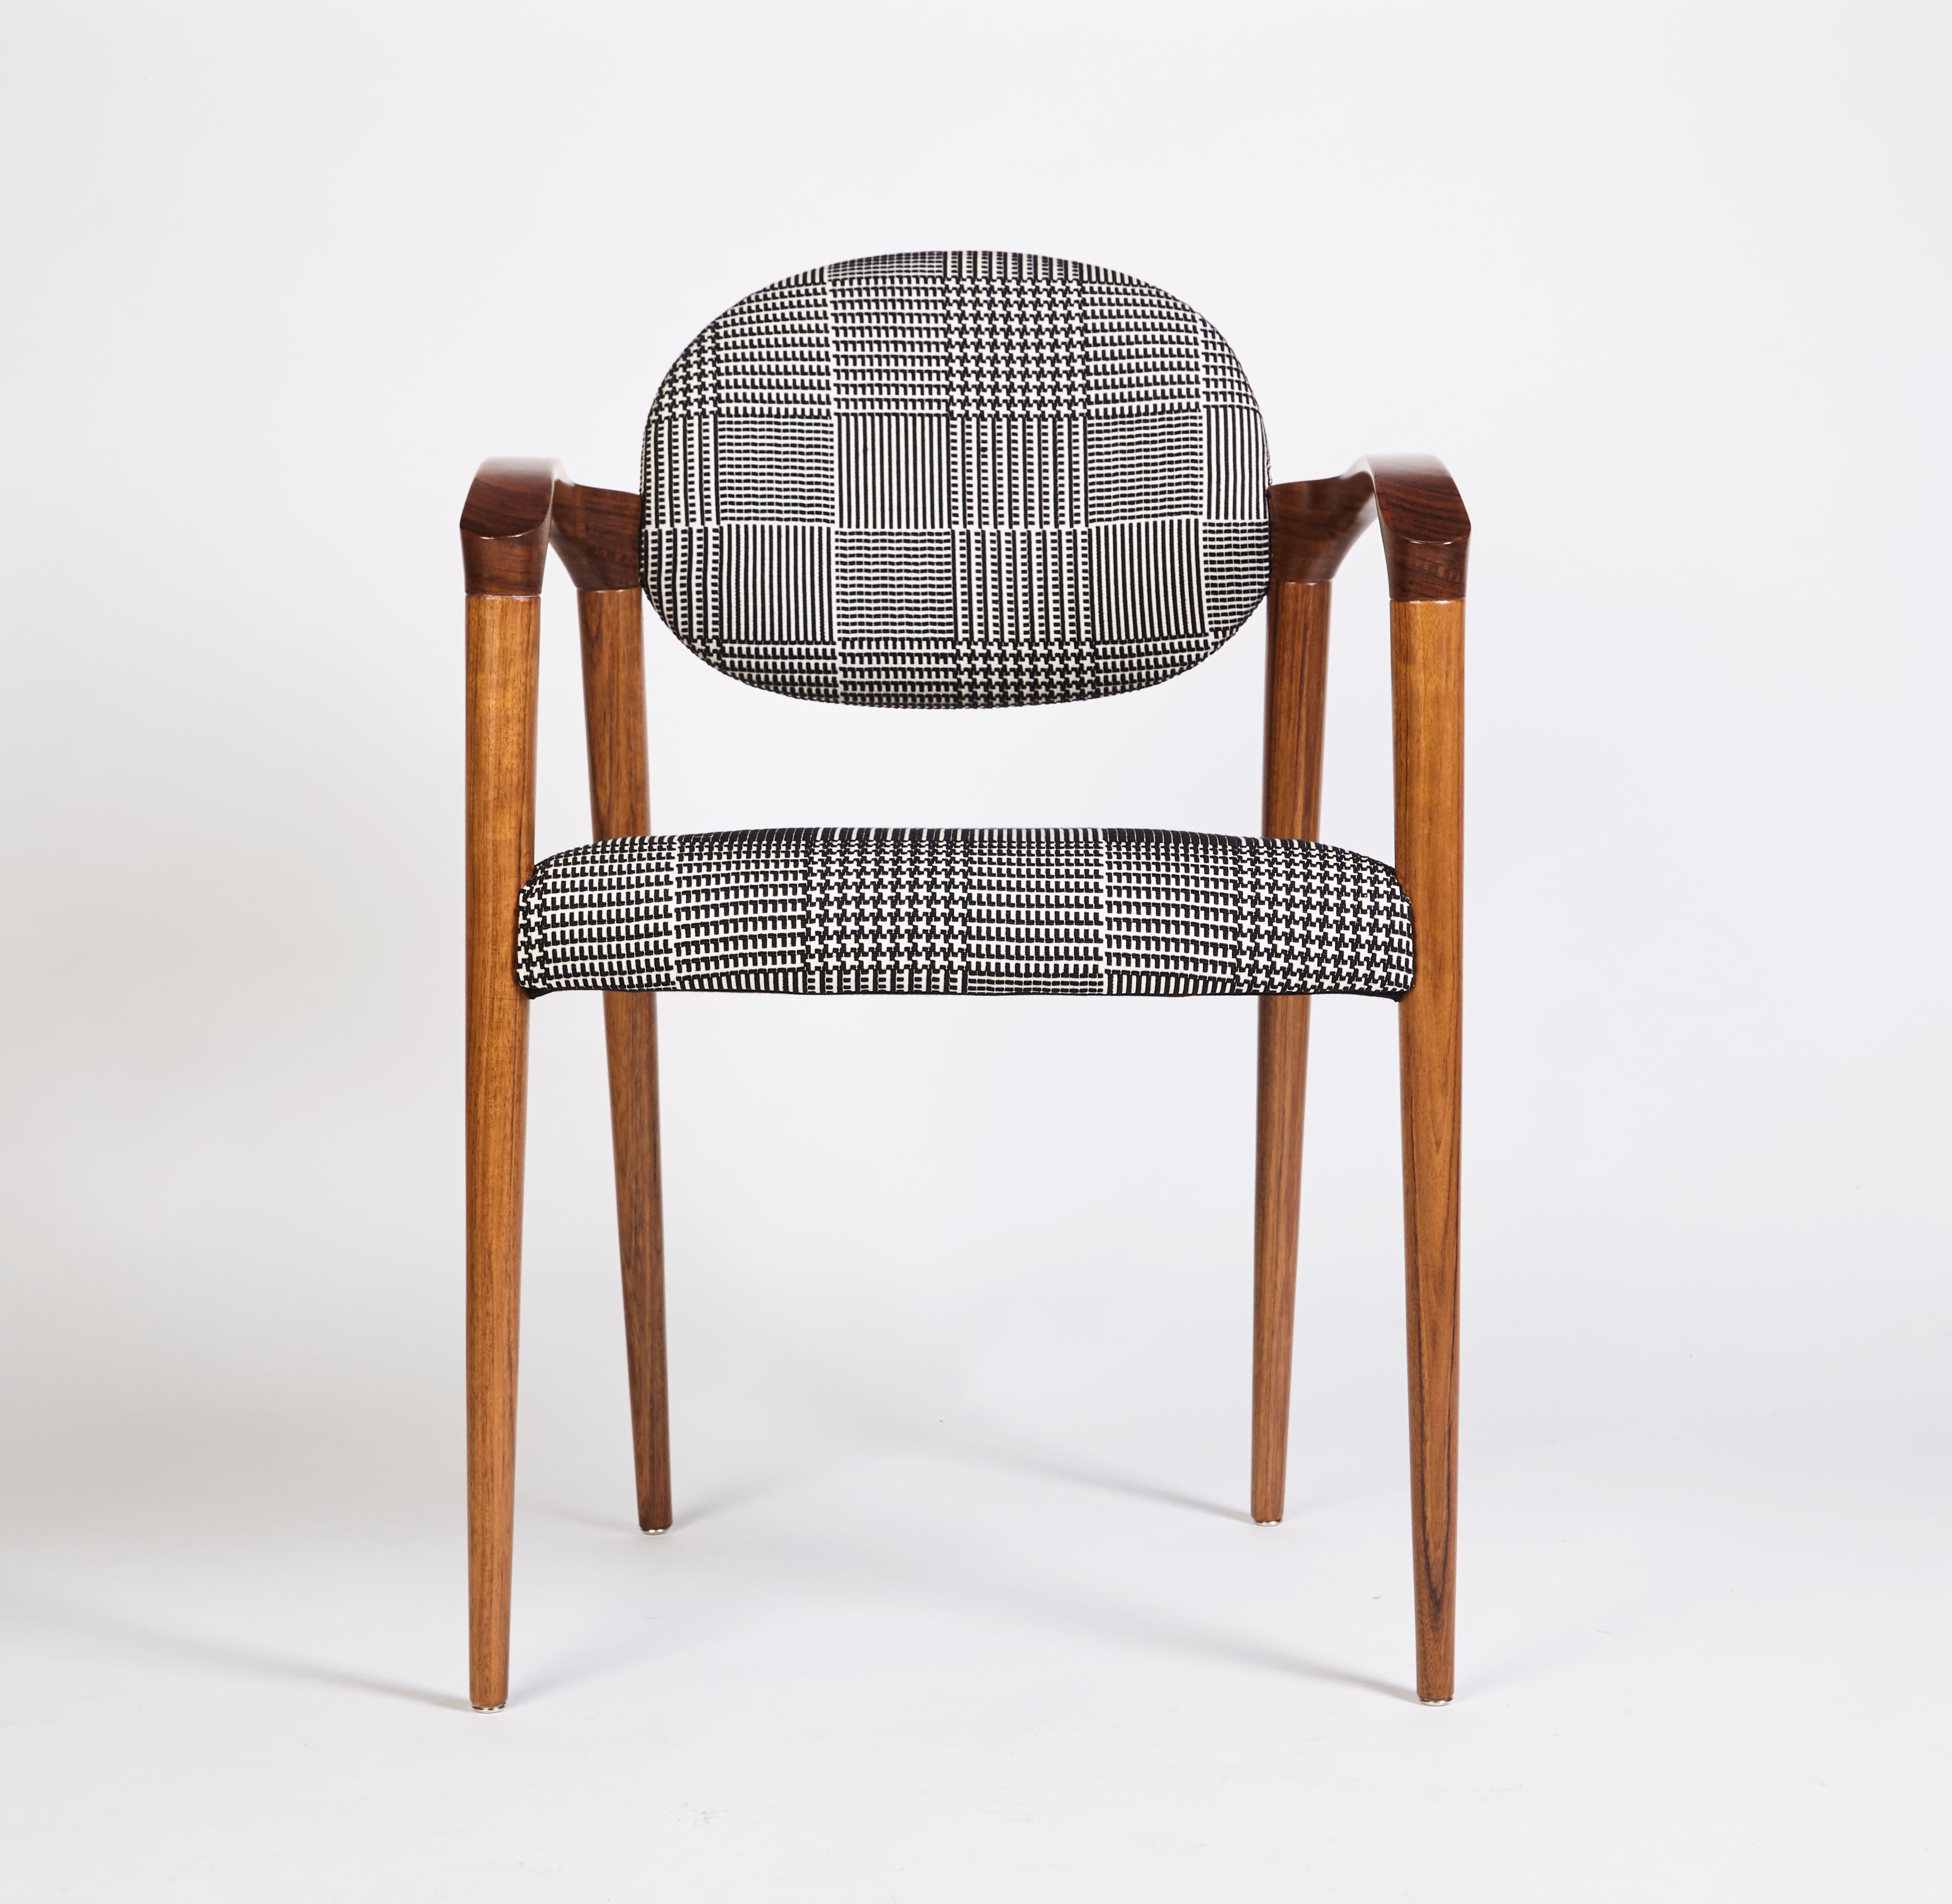 Tanoco-Stuhl von DUISTT 
Abmessungen: B 56 x T 58 x H 84 cm
MATERIALIEN: Satin Mutenye Holz, Stoff SF.DE.21.001

Der Stuhl Tanoco ist von der Architektur und dem Innendesign der Mitte des Jahrhunderts inspiriert und vermittelt mit seinen langen